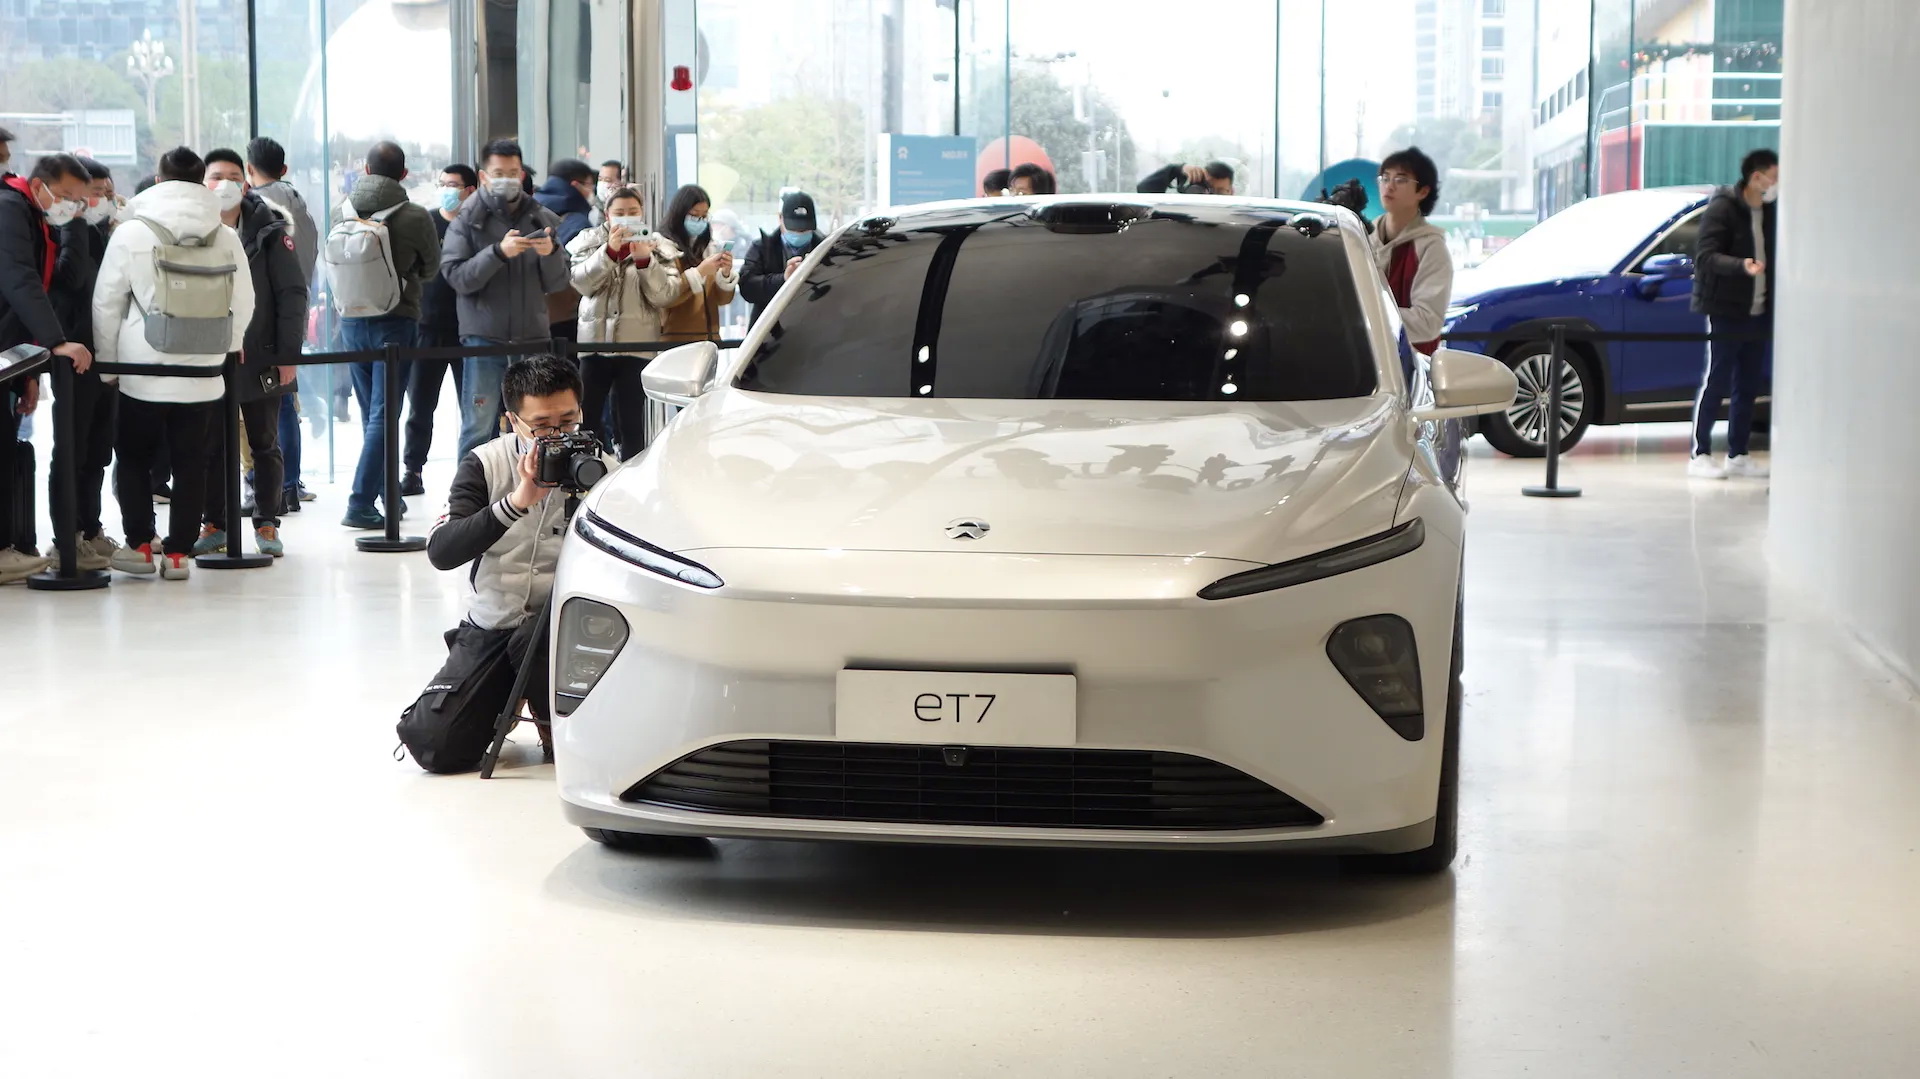 800.000 κινέζικα ηλεκτρικά αυτοκίνητα στην Ευρώπη μέχρι το 2025!